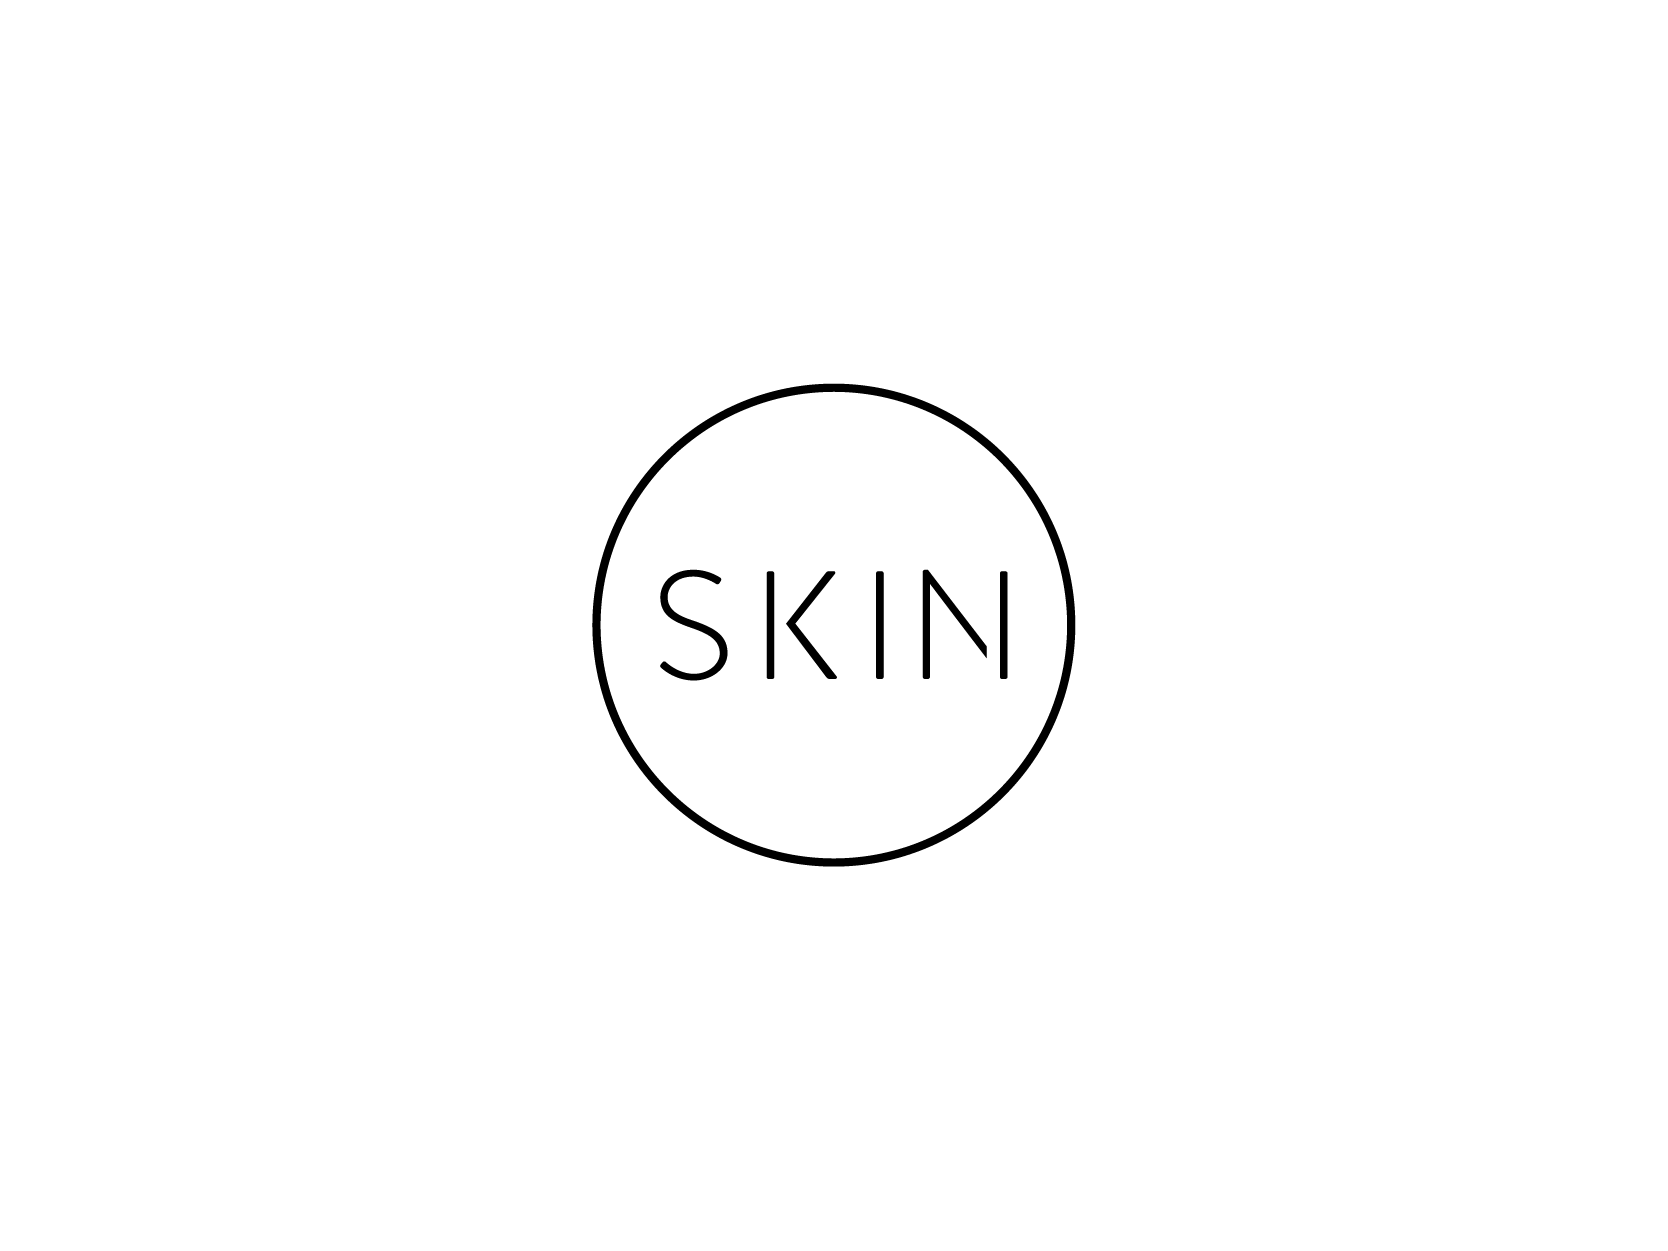 Skin (friends)